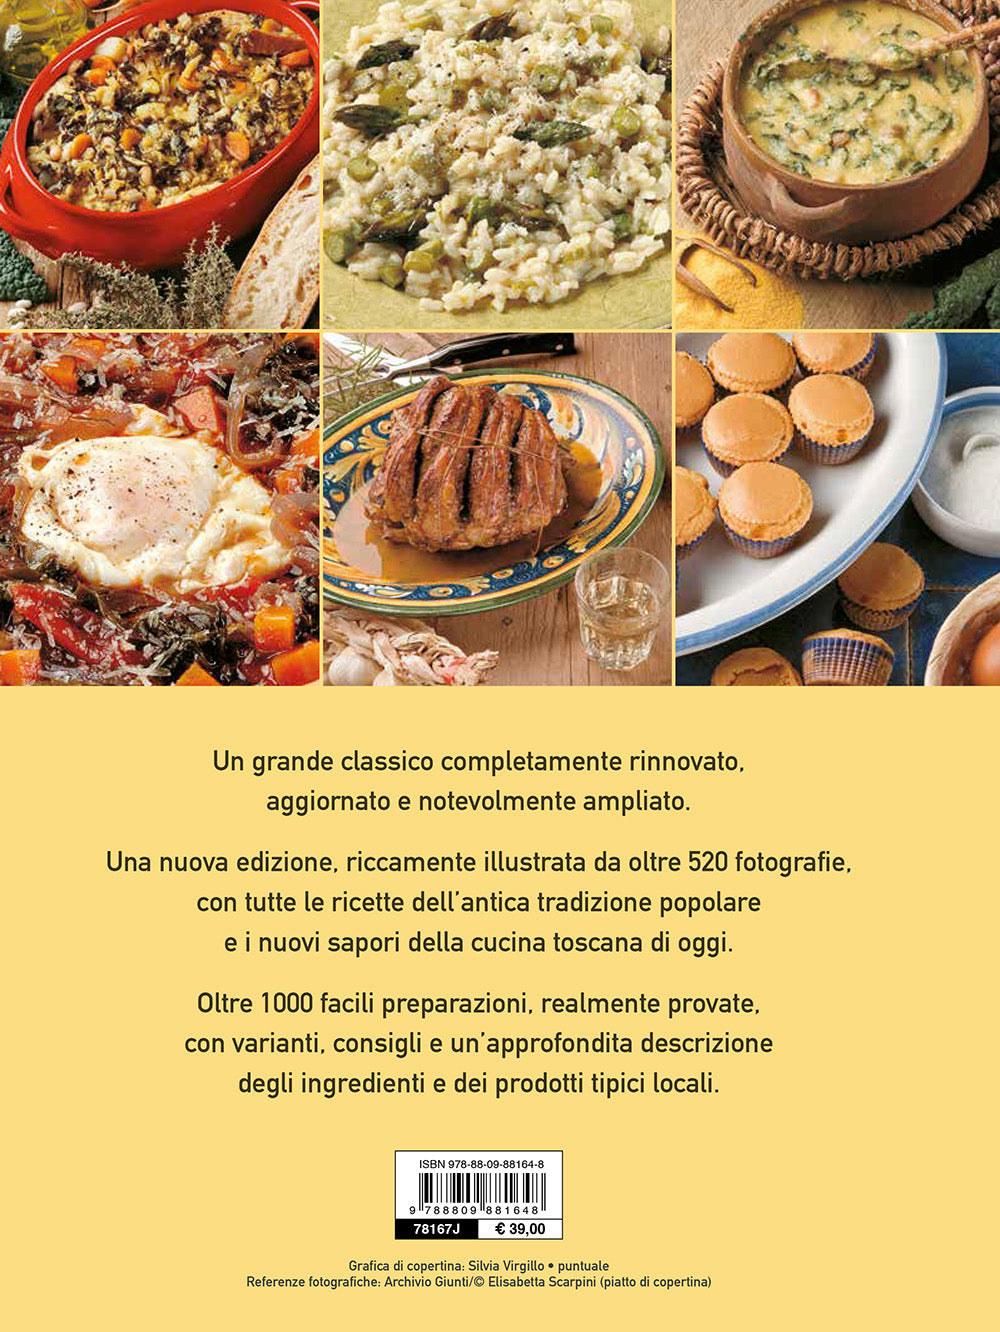 Il grande libro della vera cucina toscana::Ricette, prodotti tipici, storia, tradizioni